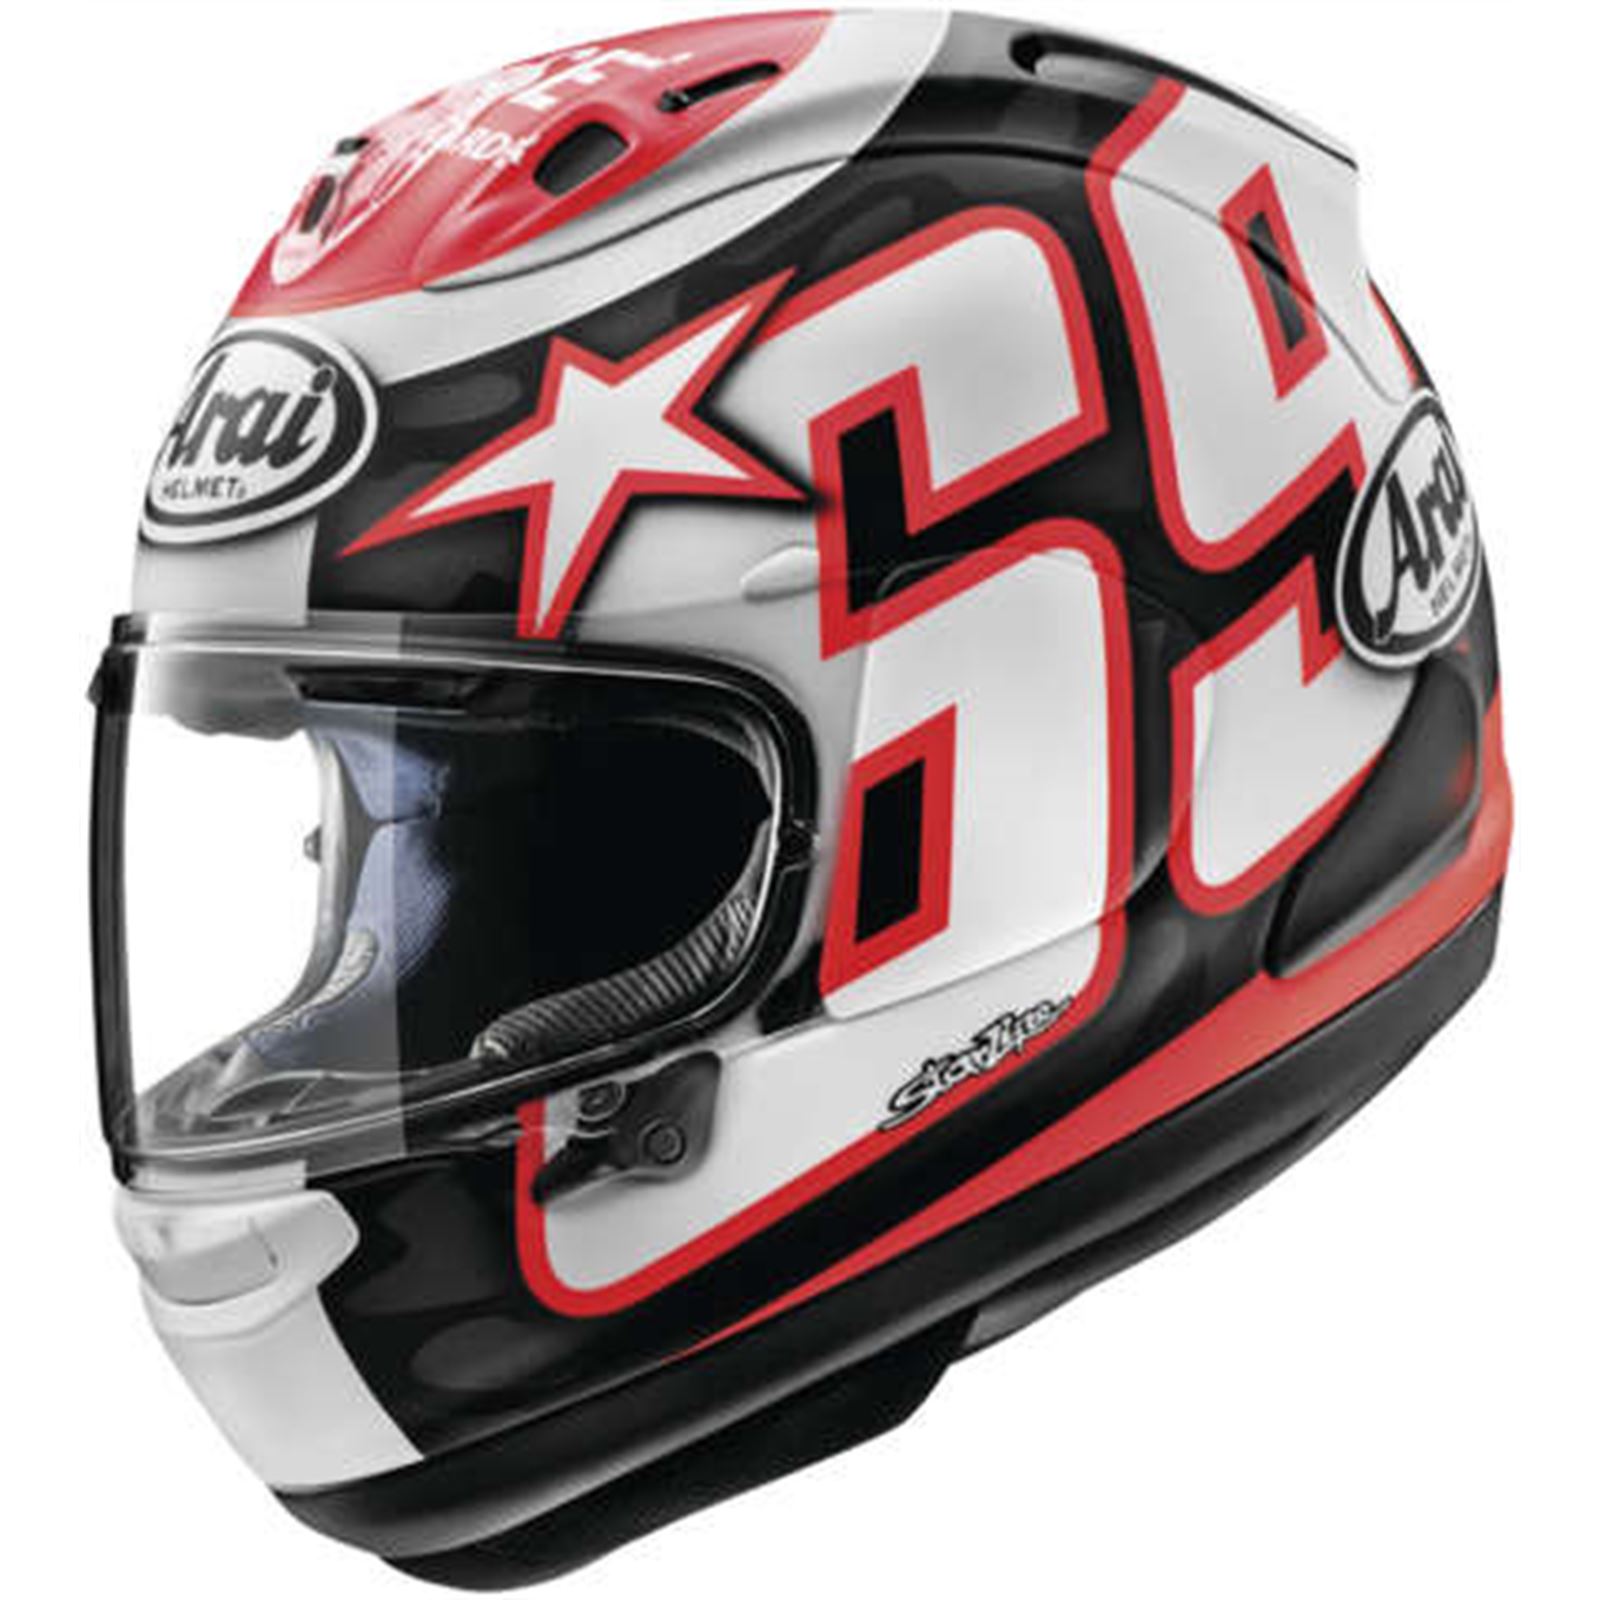 Arai Corsair-X Helmet - Nicky Reset - Frost - XL